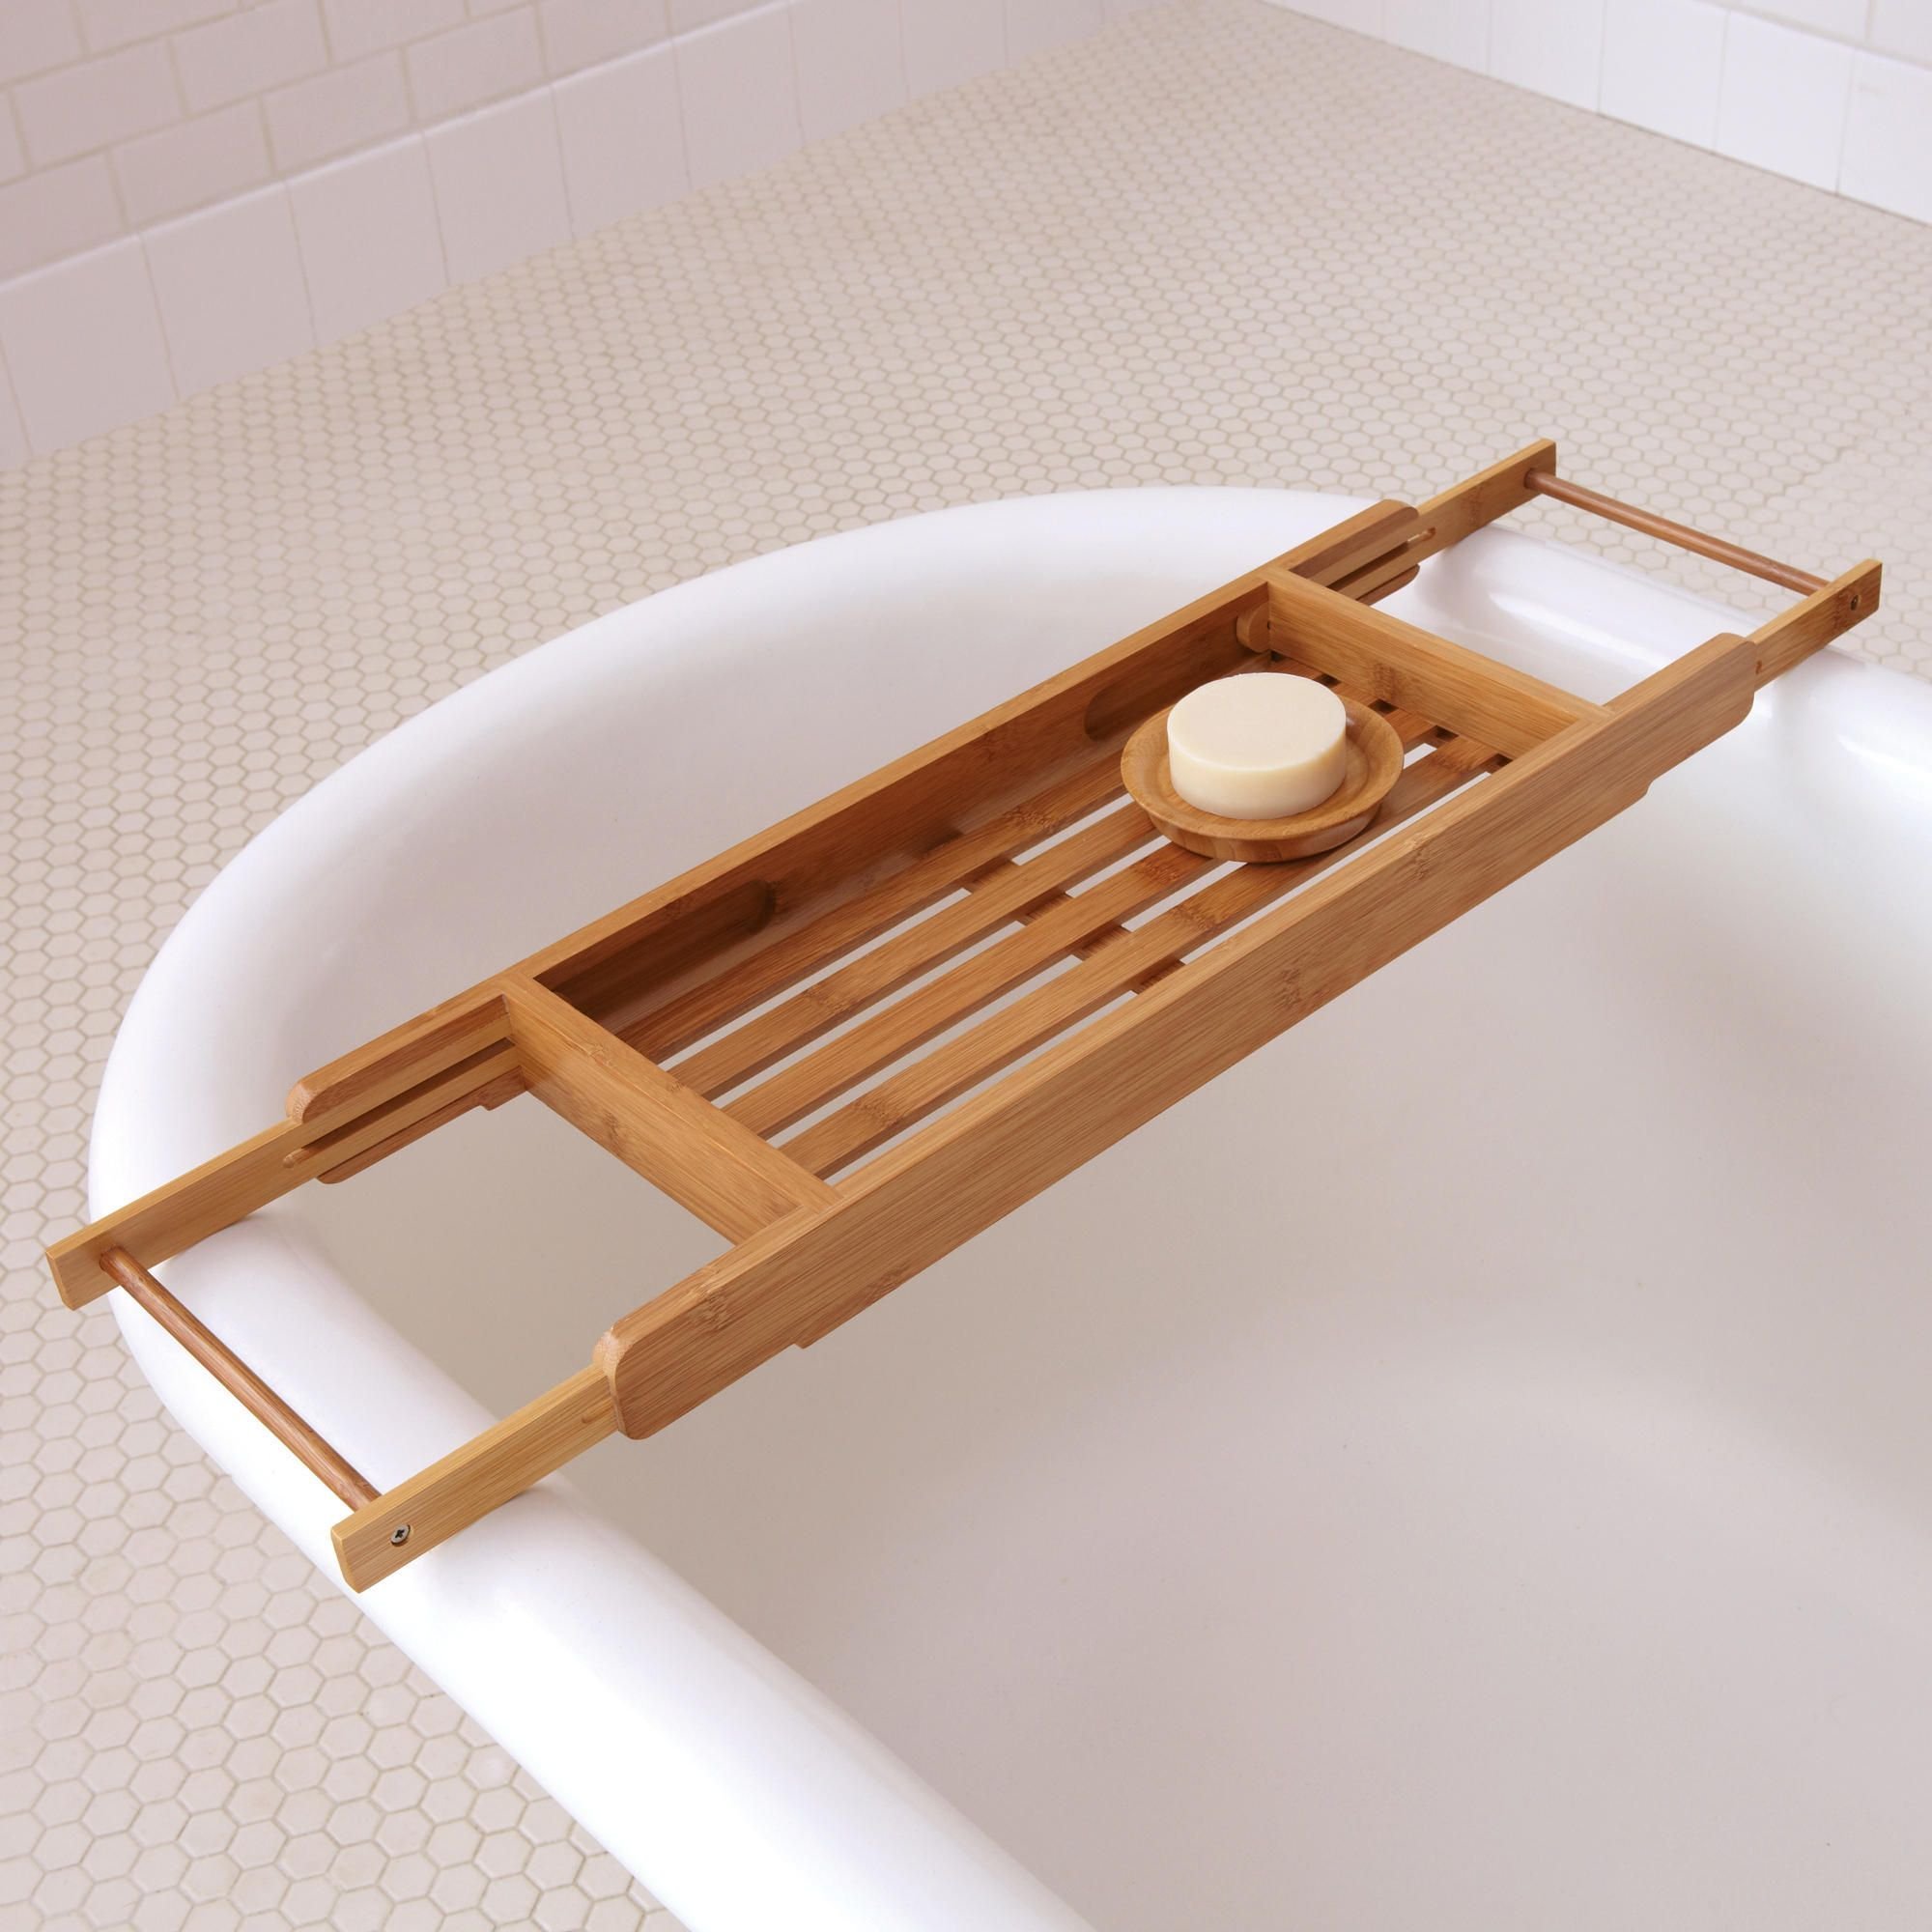 Подставки в ванную купить. Подставка для ванны. Подставка на ванну деревянная. Деревянный поднос в ванную. Доска на ванну деревянная.